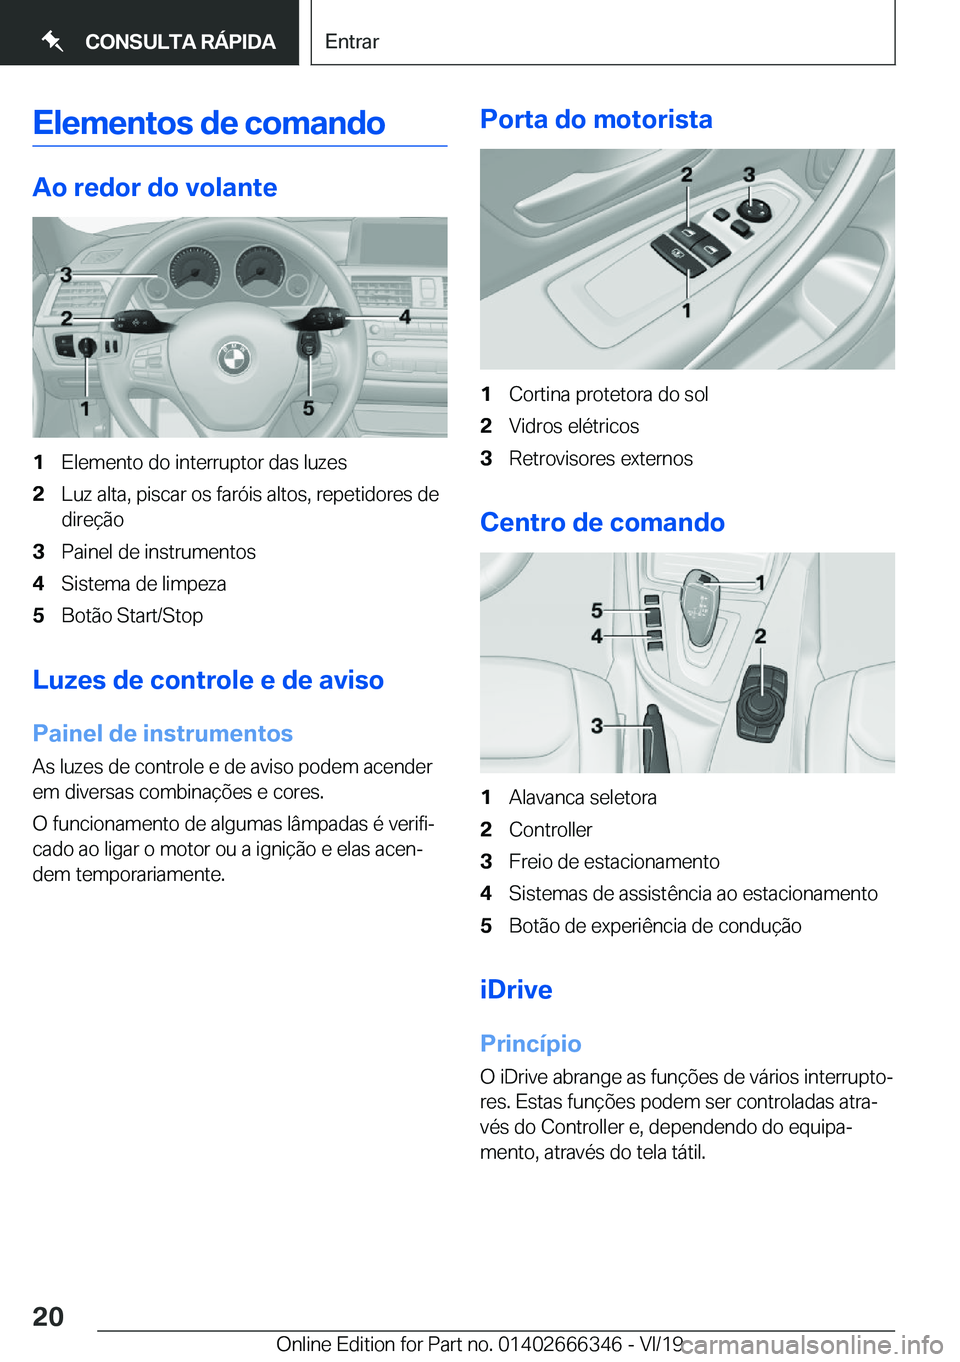 BMW 4 SERIES COUPE 2020  Manual do condutor (in Portuguese) �E�l�e�m�e�n�t�o�s��d�e��c�o�m�a�n�d�o
�A�o��r�e�d�o�r��d�o��v�o�l�a�n�t�e
�1�E�l�e�m�e�n�t�o��d�o��i�n�t�e�r�r�u�p�t�o�r��d�a�s��l�u�z�e�s�2�L�u�z��a�l�t�a�,��p�i�s�c�a�r��o�s��f�a�r�ó�